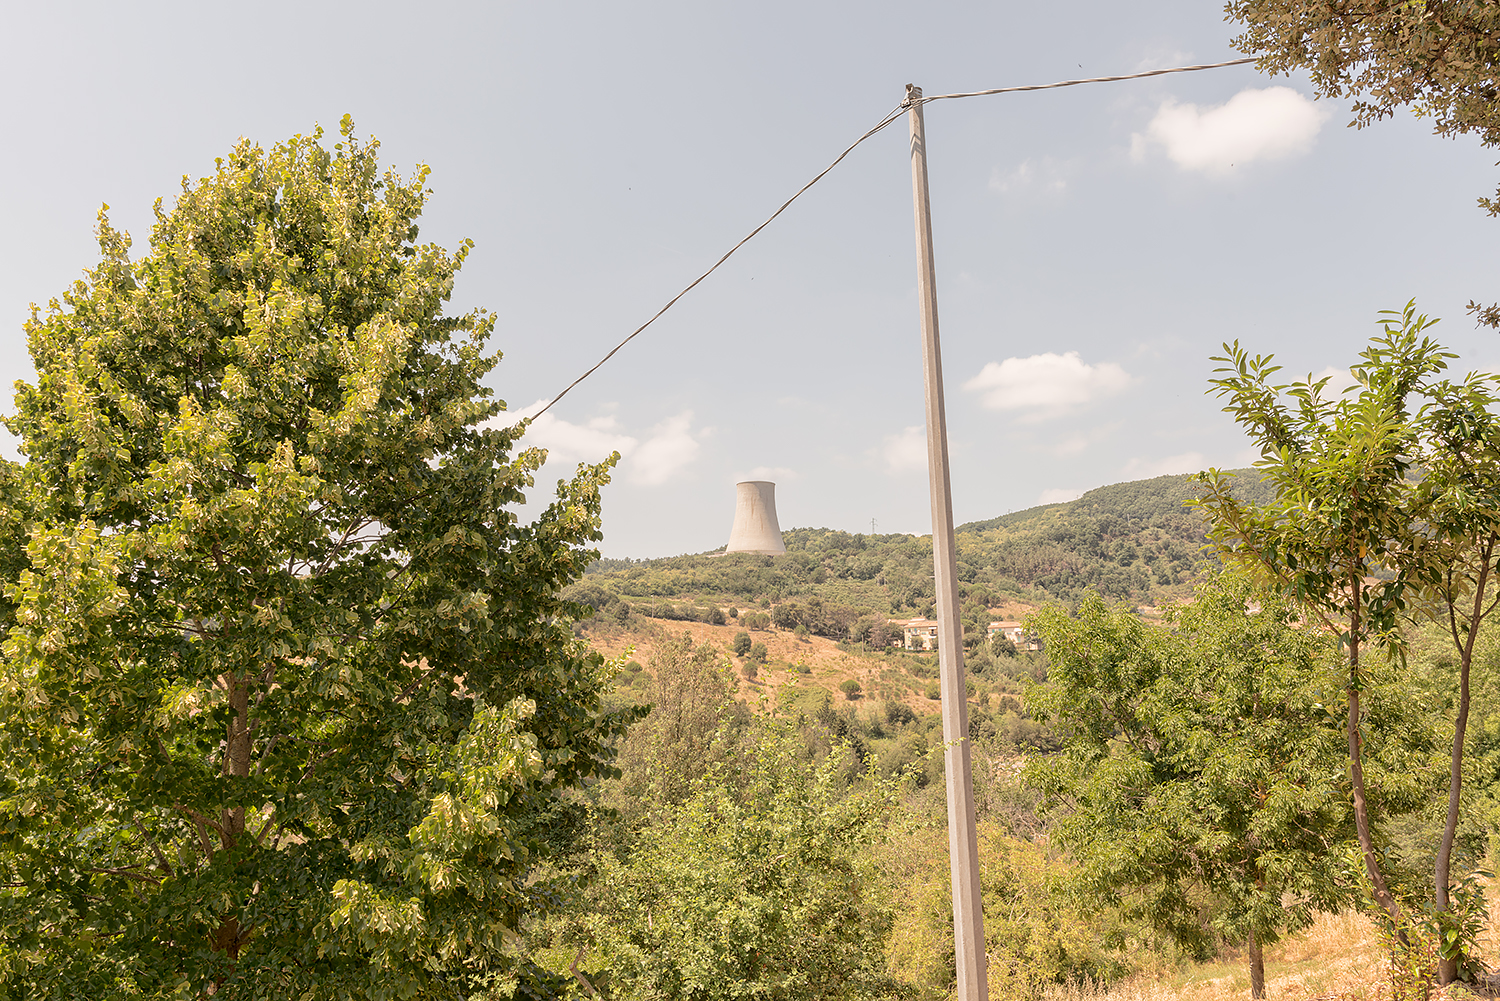  ITALIA, 2017, Castelnuovo di Val di Cecina (PI). La centrale geotermica "Nuova Sasso” nell’area intorno a Larderello. © LUCA CERABONA 